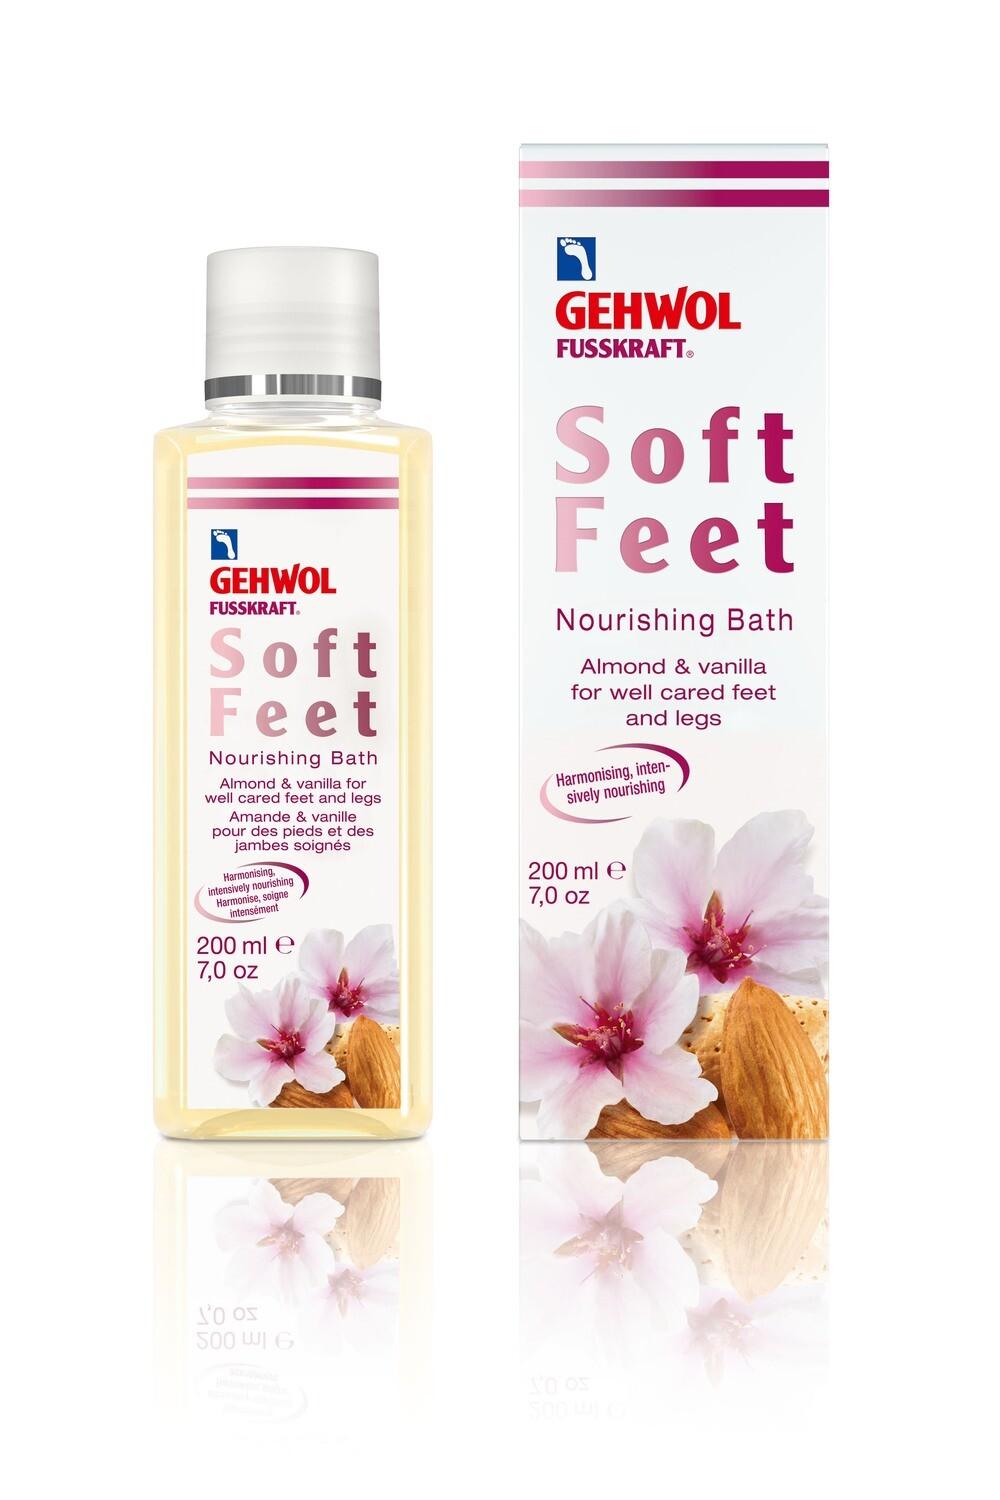 Gehwol Fusskraft Soft Feet Bath | Fotpleie | Gehwol | JK SHOP | JK Barber og herre frisør | Lavepriser | Best